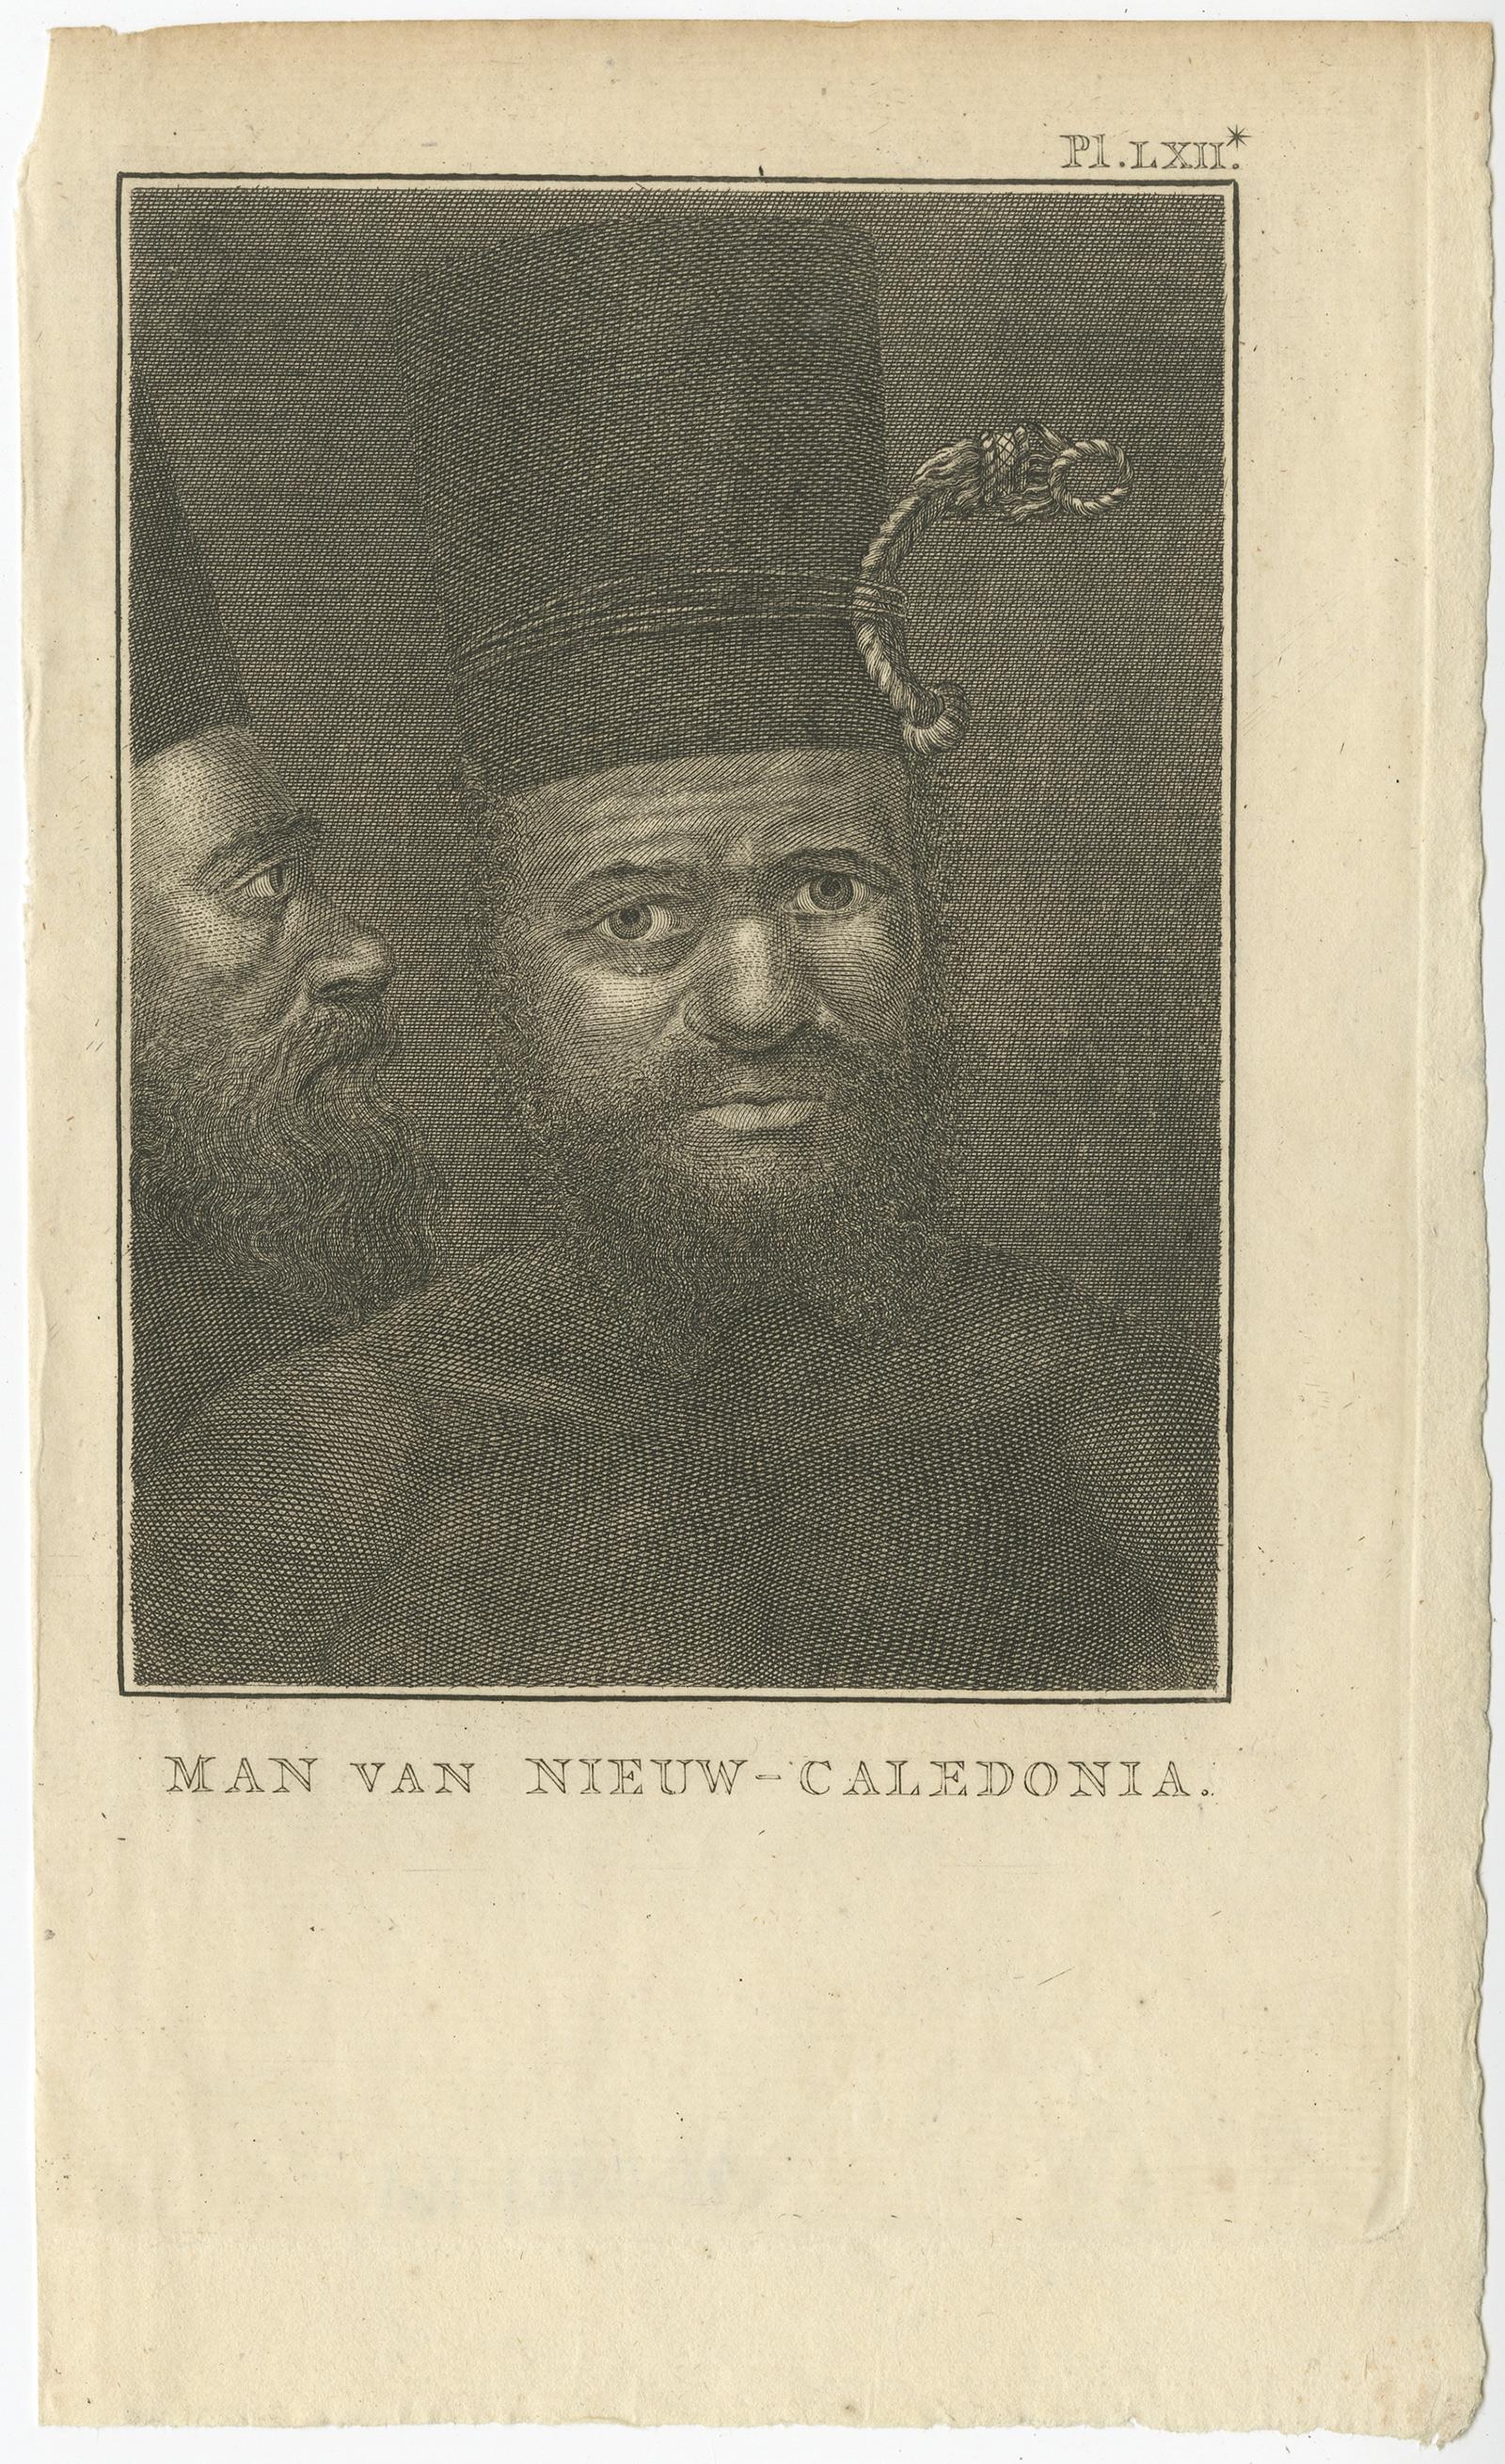 Antique print titled 'Man van Nieuw-Caledonia'. 

Antique print depicting a man of New Caledonia. Originates from 'Reizen Rondom de Waereld door James Cook (..)'. 

Artists and Engravers: Translated by J.D. Pasteur. Published by Honkoop, Allart